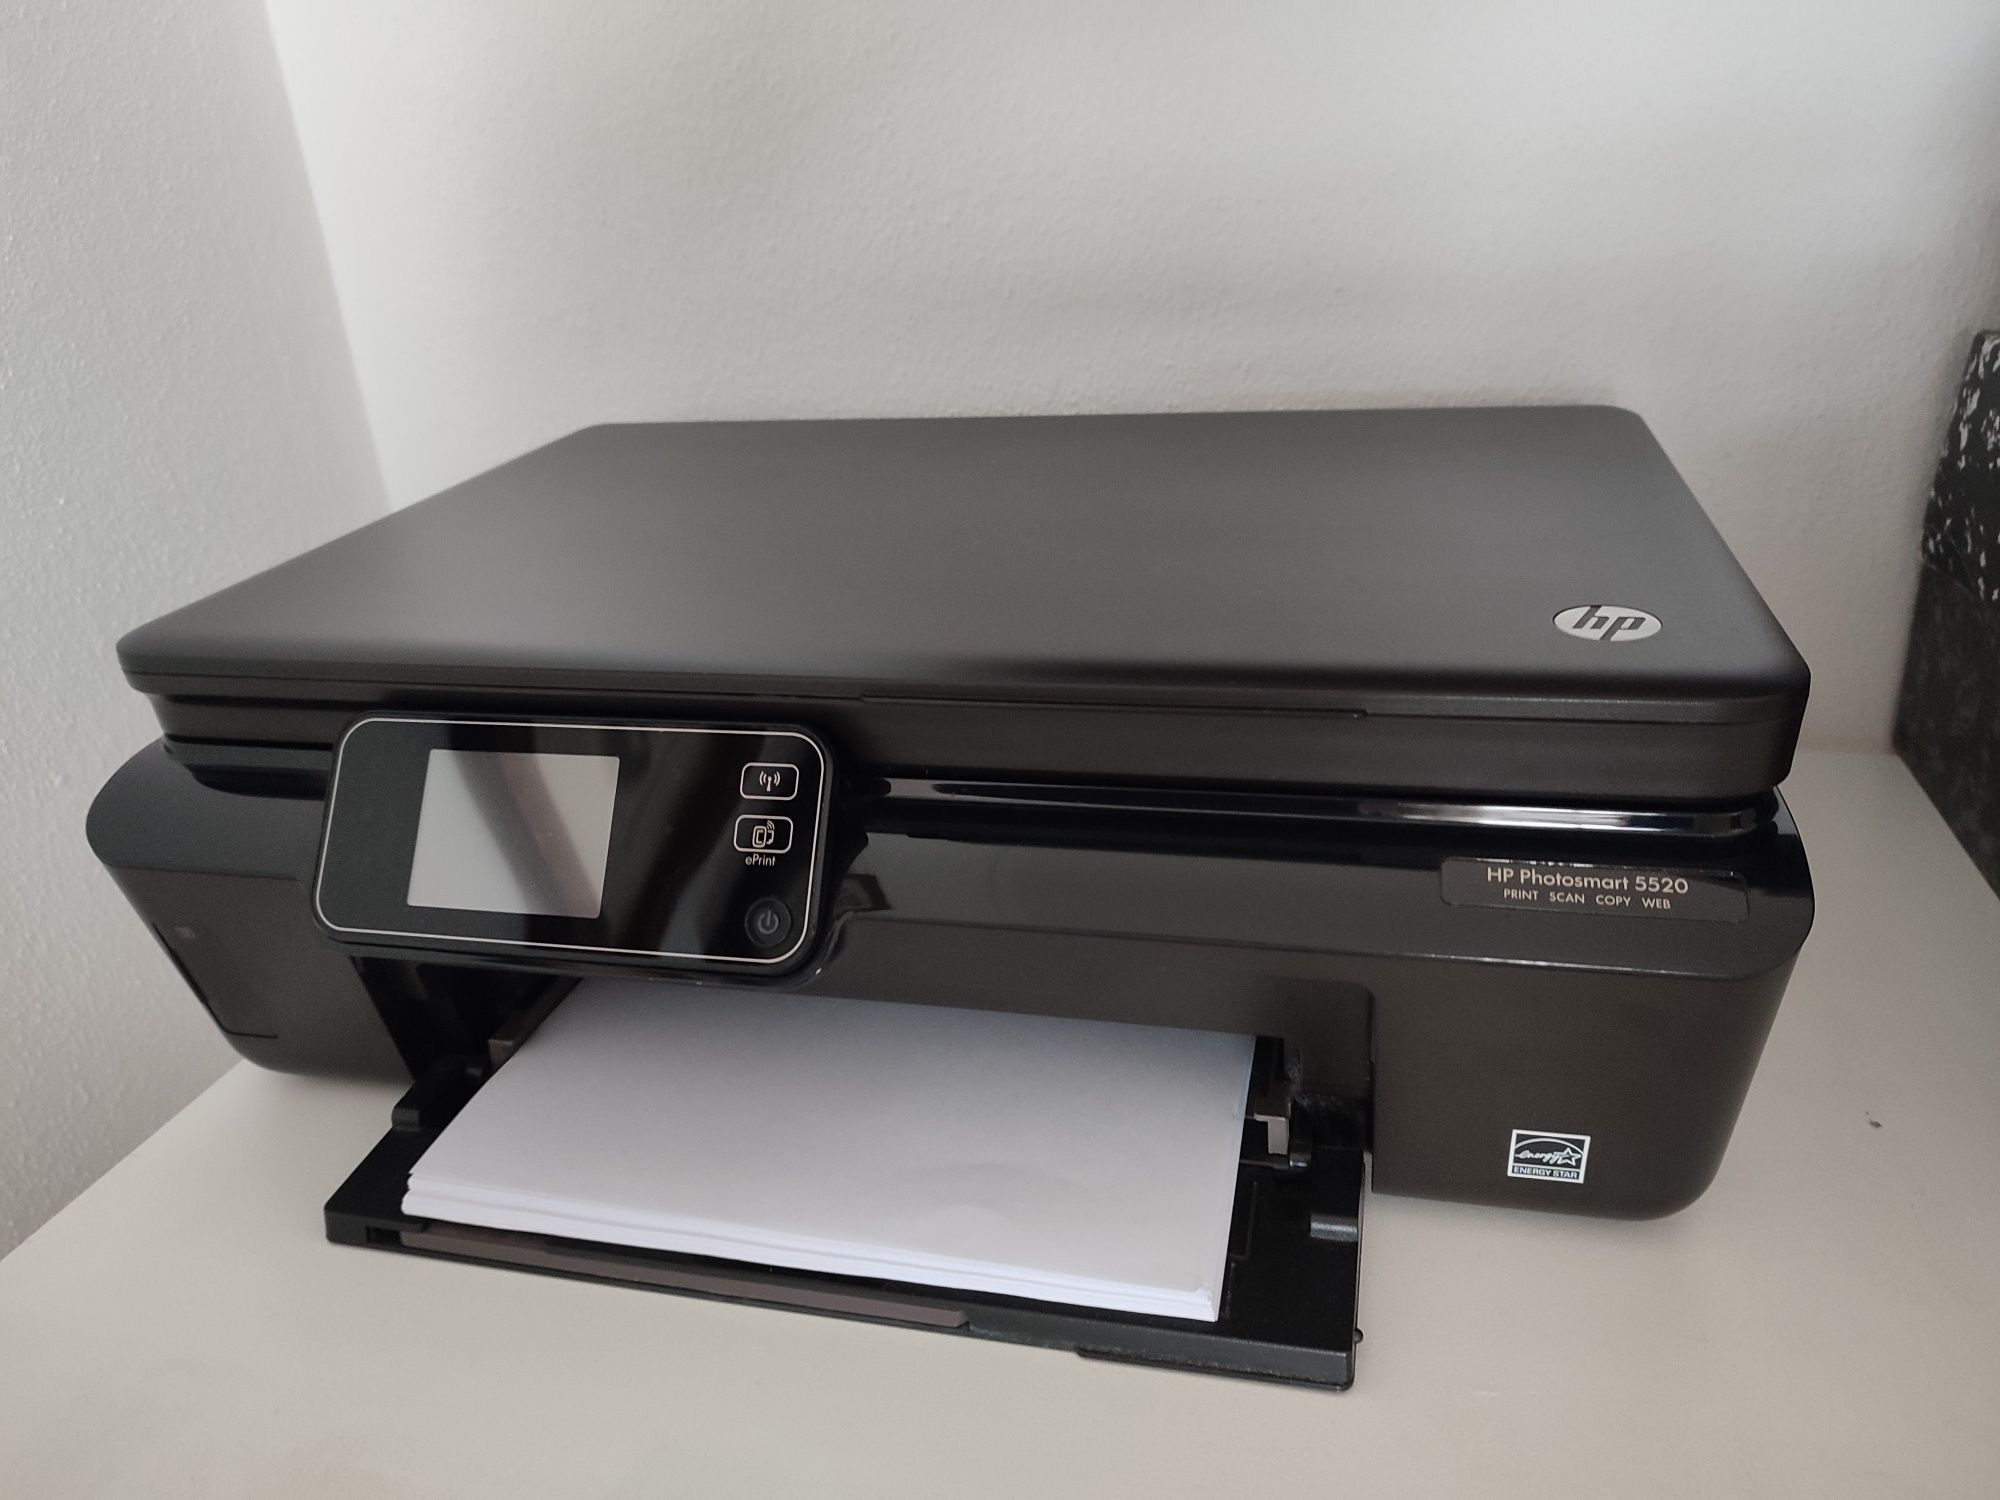 Vendo impressora/fotocopiadora